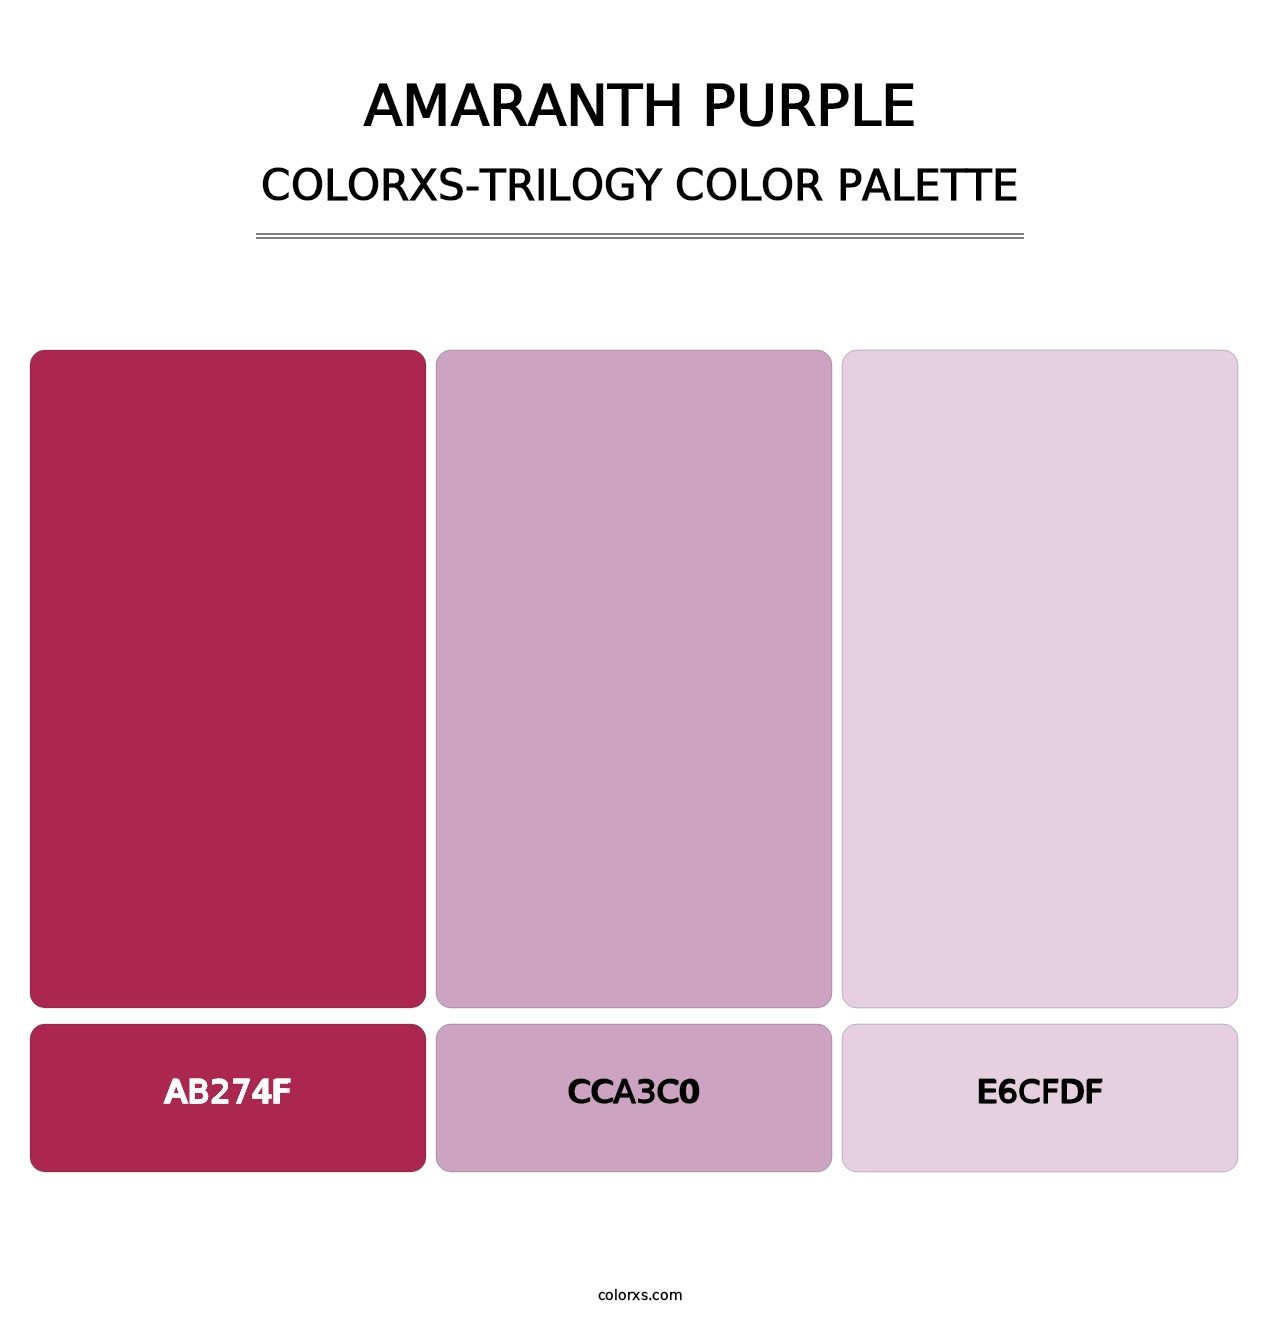 Amaranth Purple - Colorxs Trilogy Palette